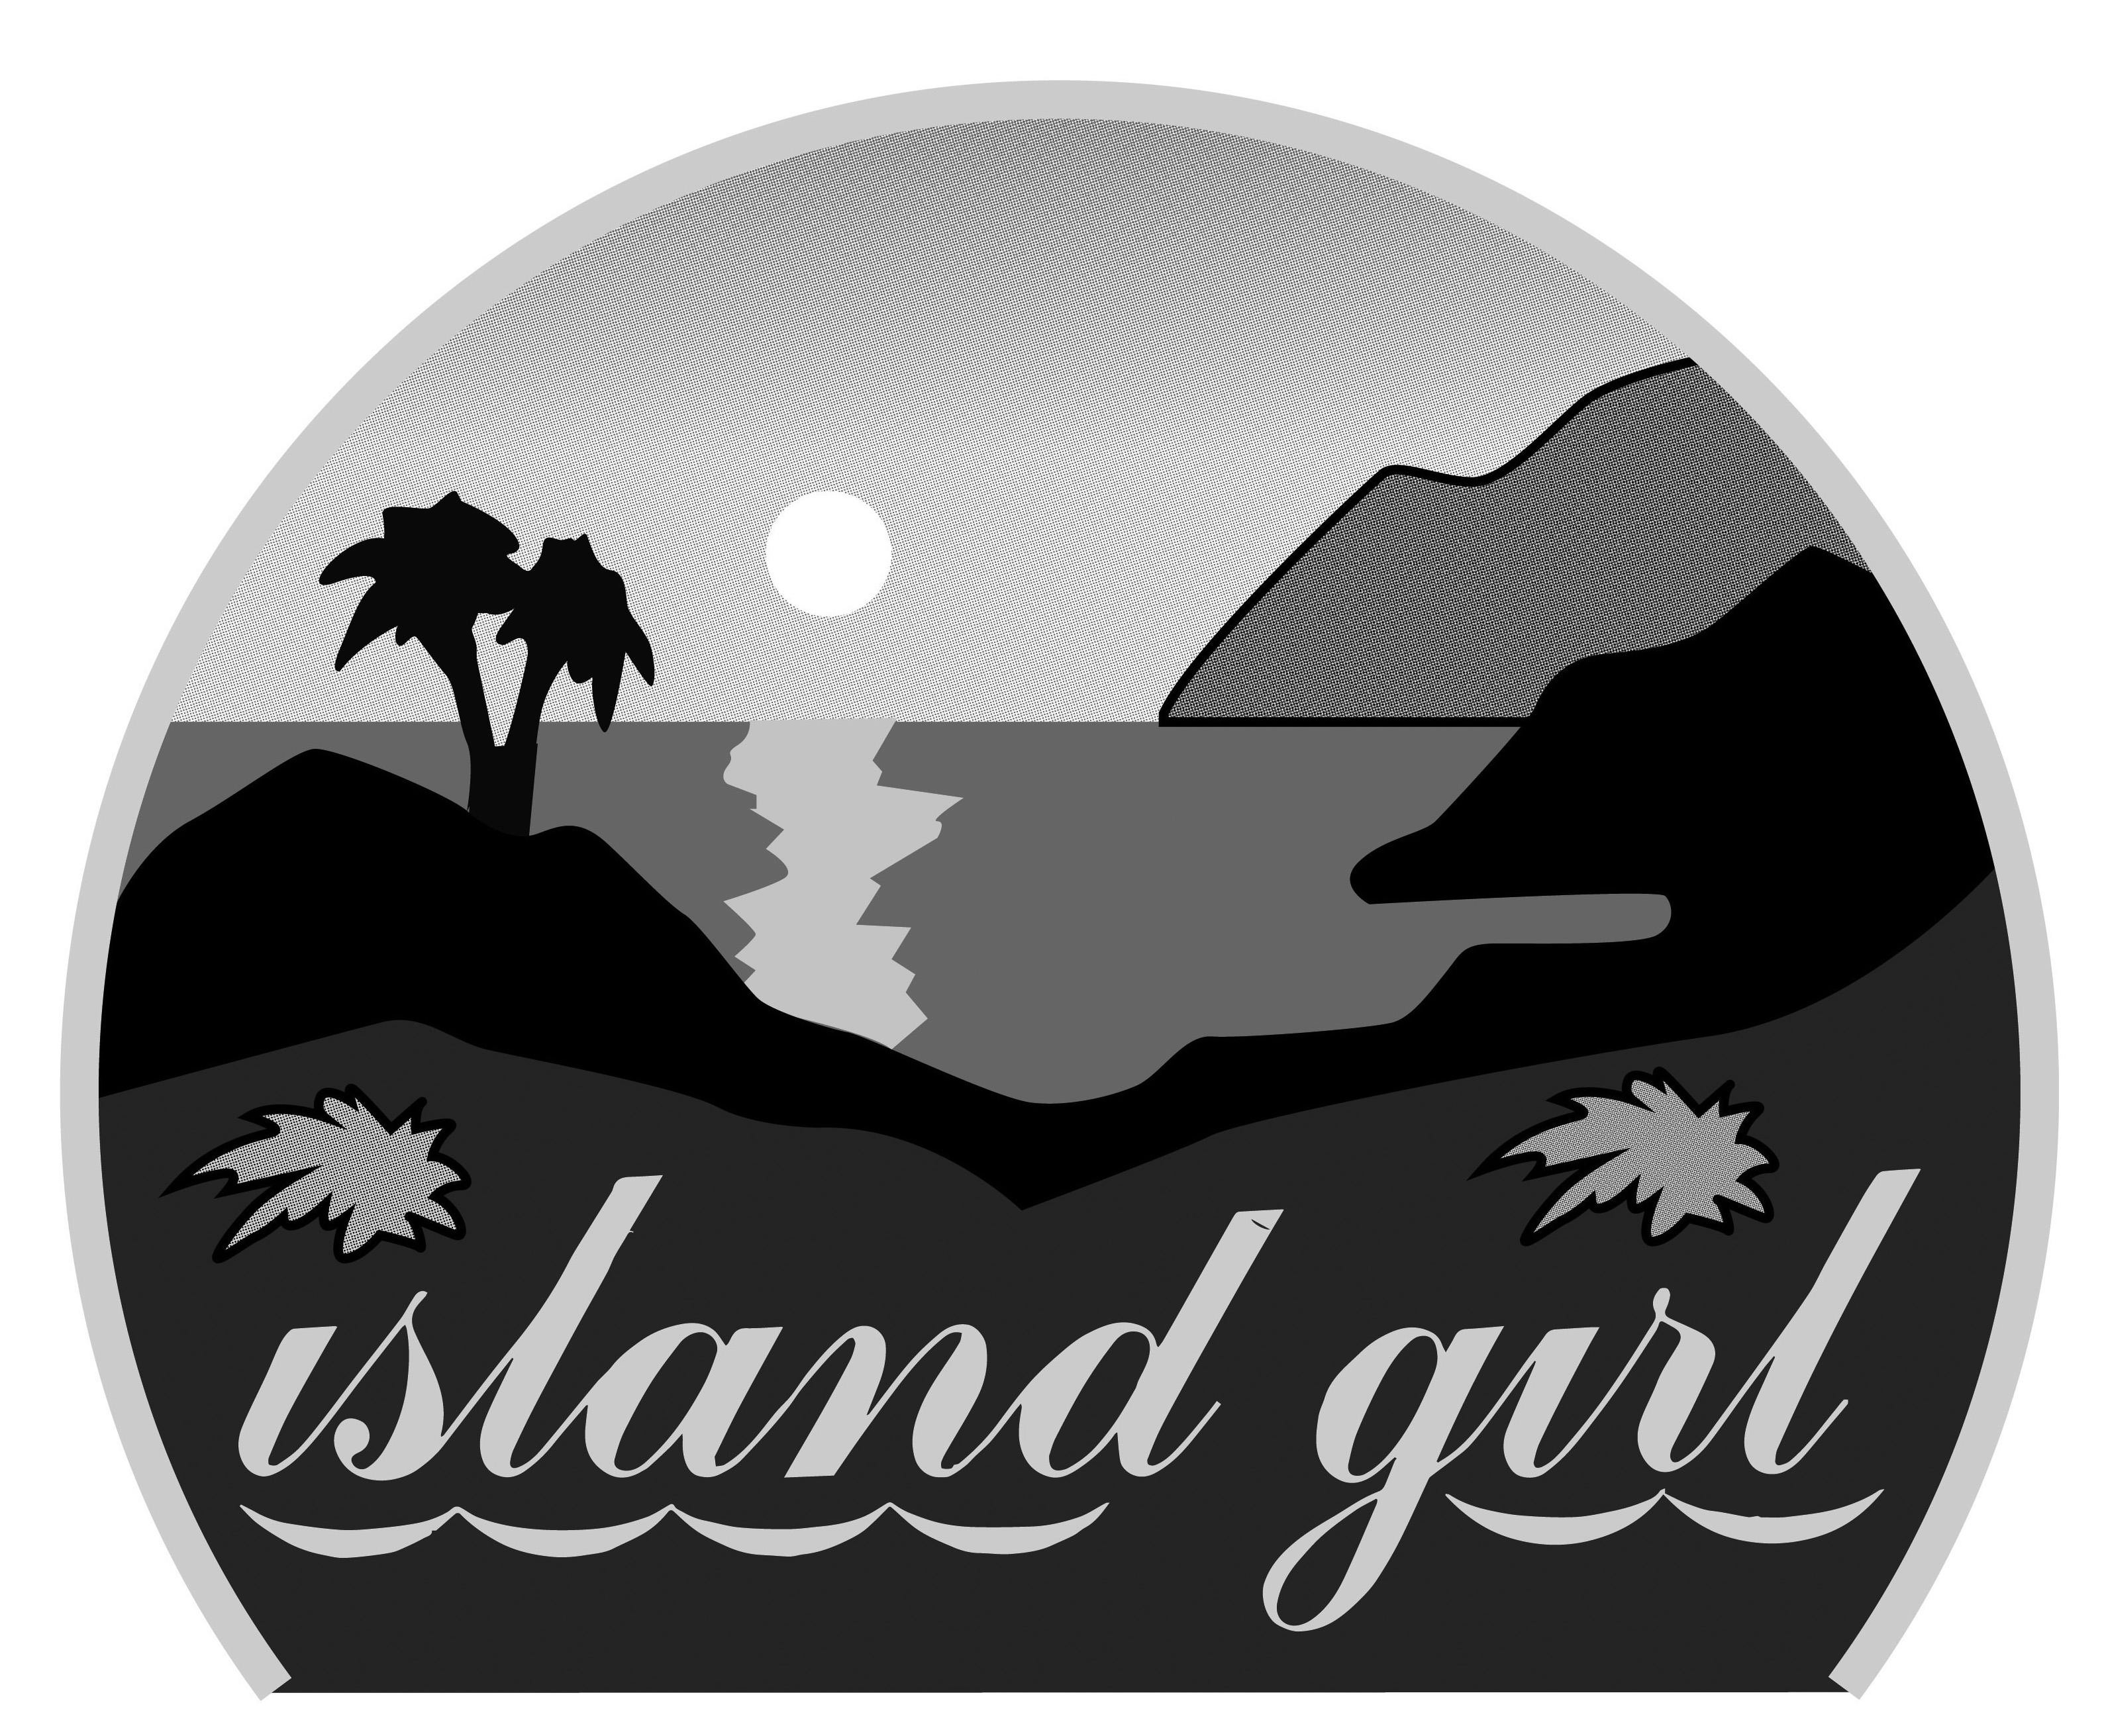 ISLAND GIRL